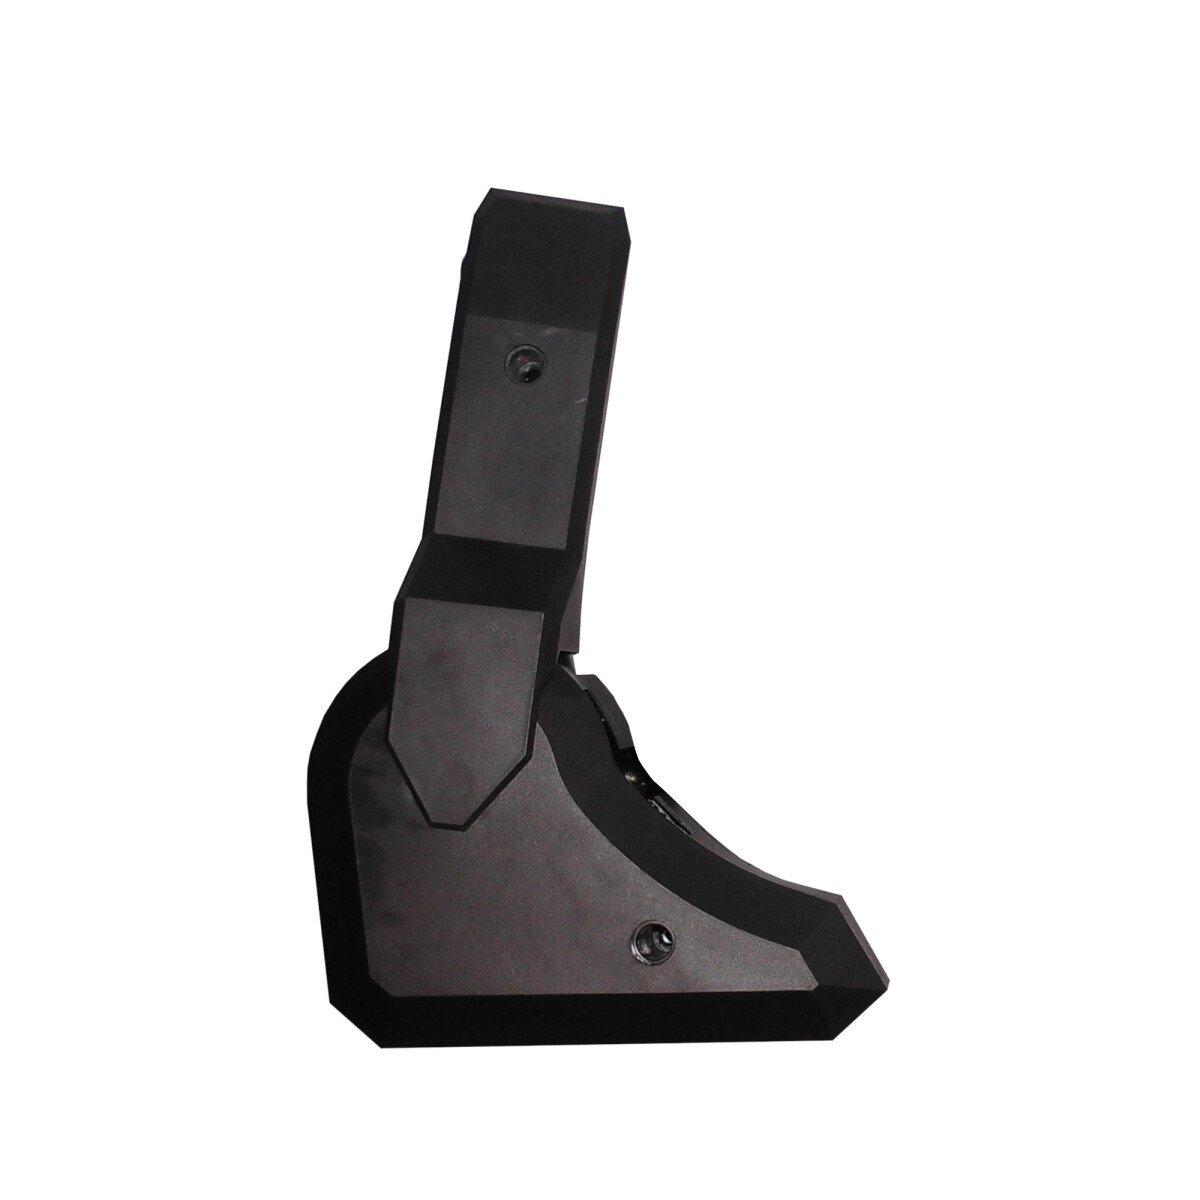 Marvo - Repuesto Reclinador para Silla. sin Palanca. Compatibilidad Silla Marvo CH106. Color Negro. - 001 